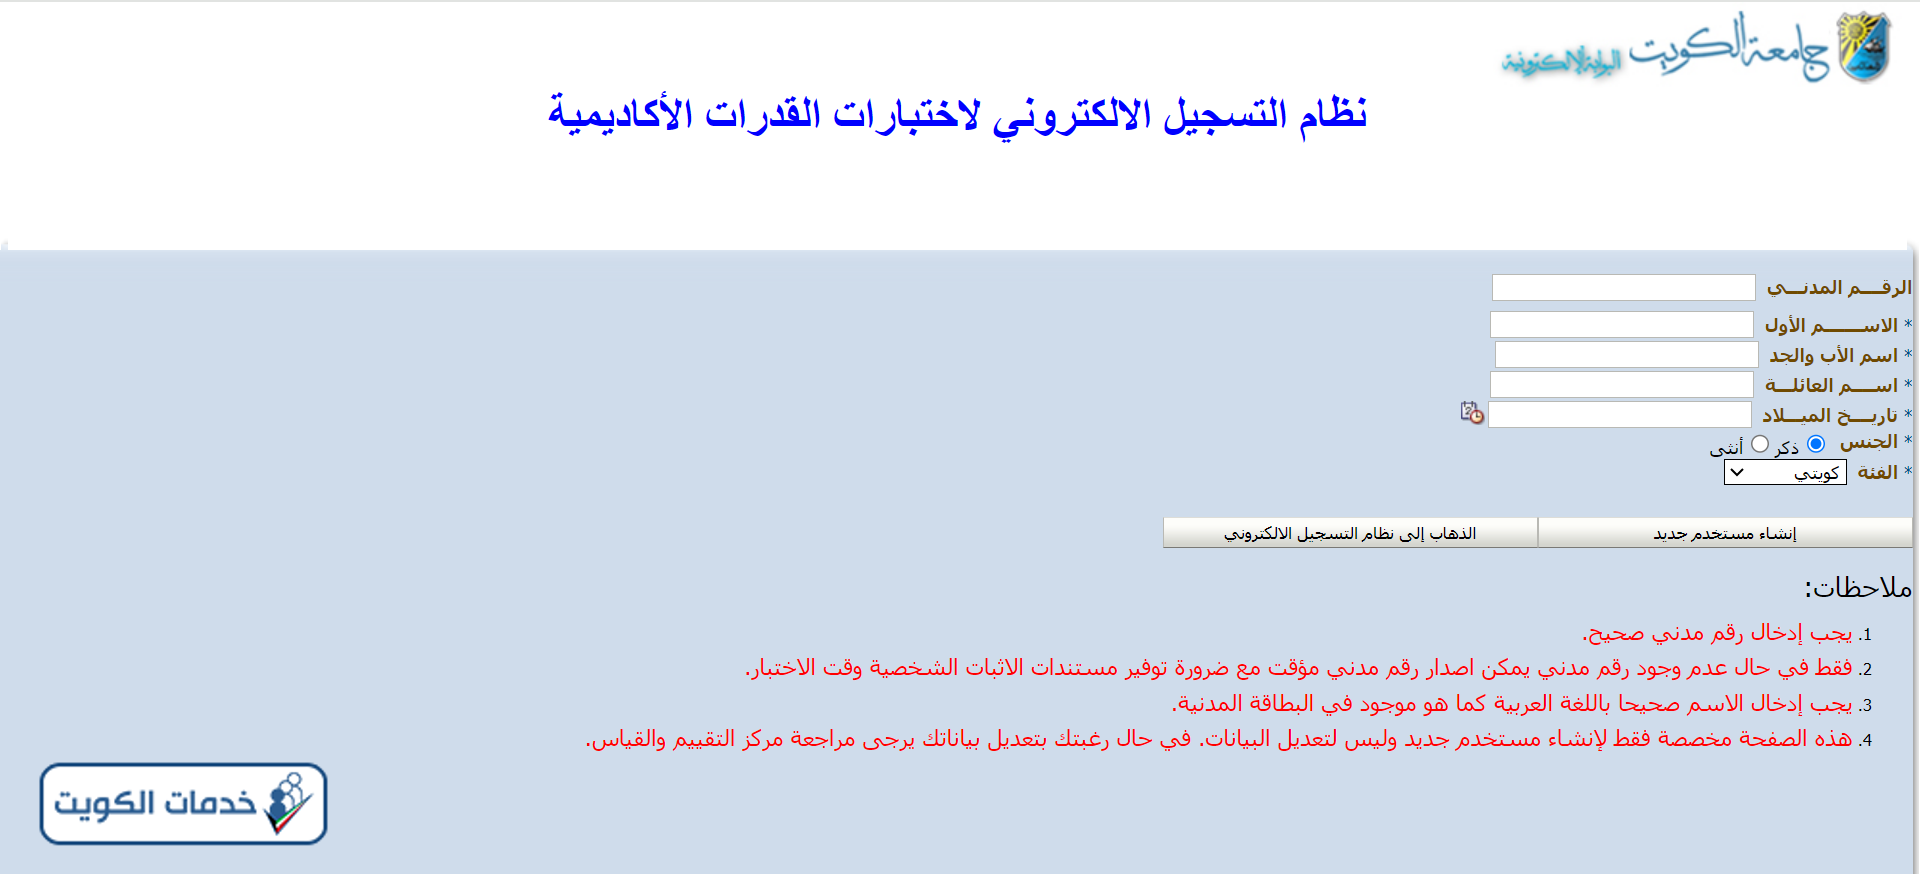 التسجيل الالكتروني في اختبار القدرات جامعة الكويت